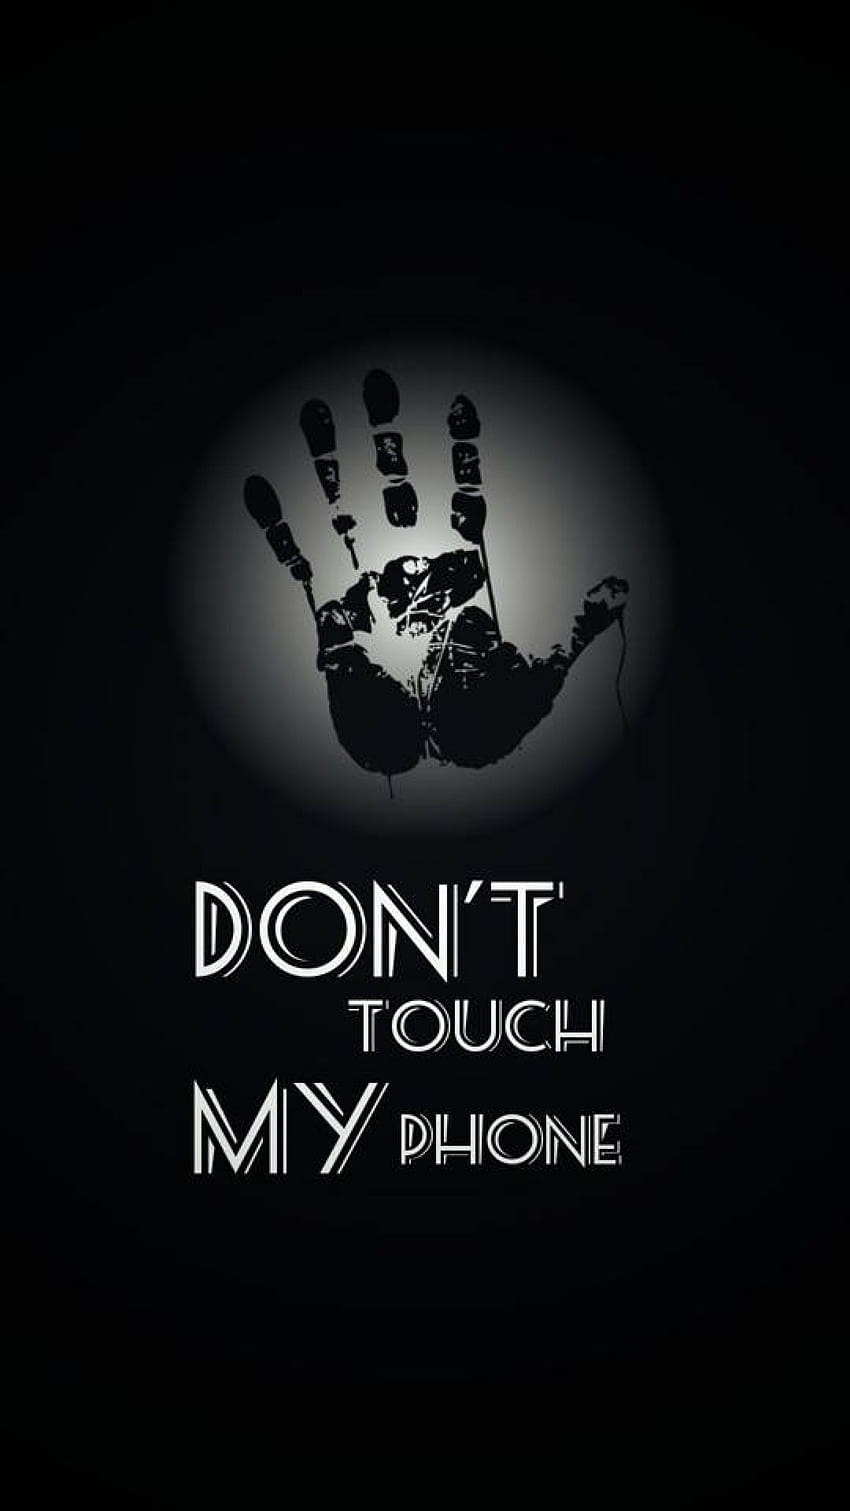 Don't touch my phone wallpaper - Ứng dụng trên Google Play